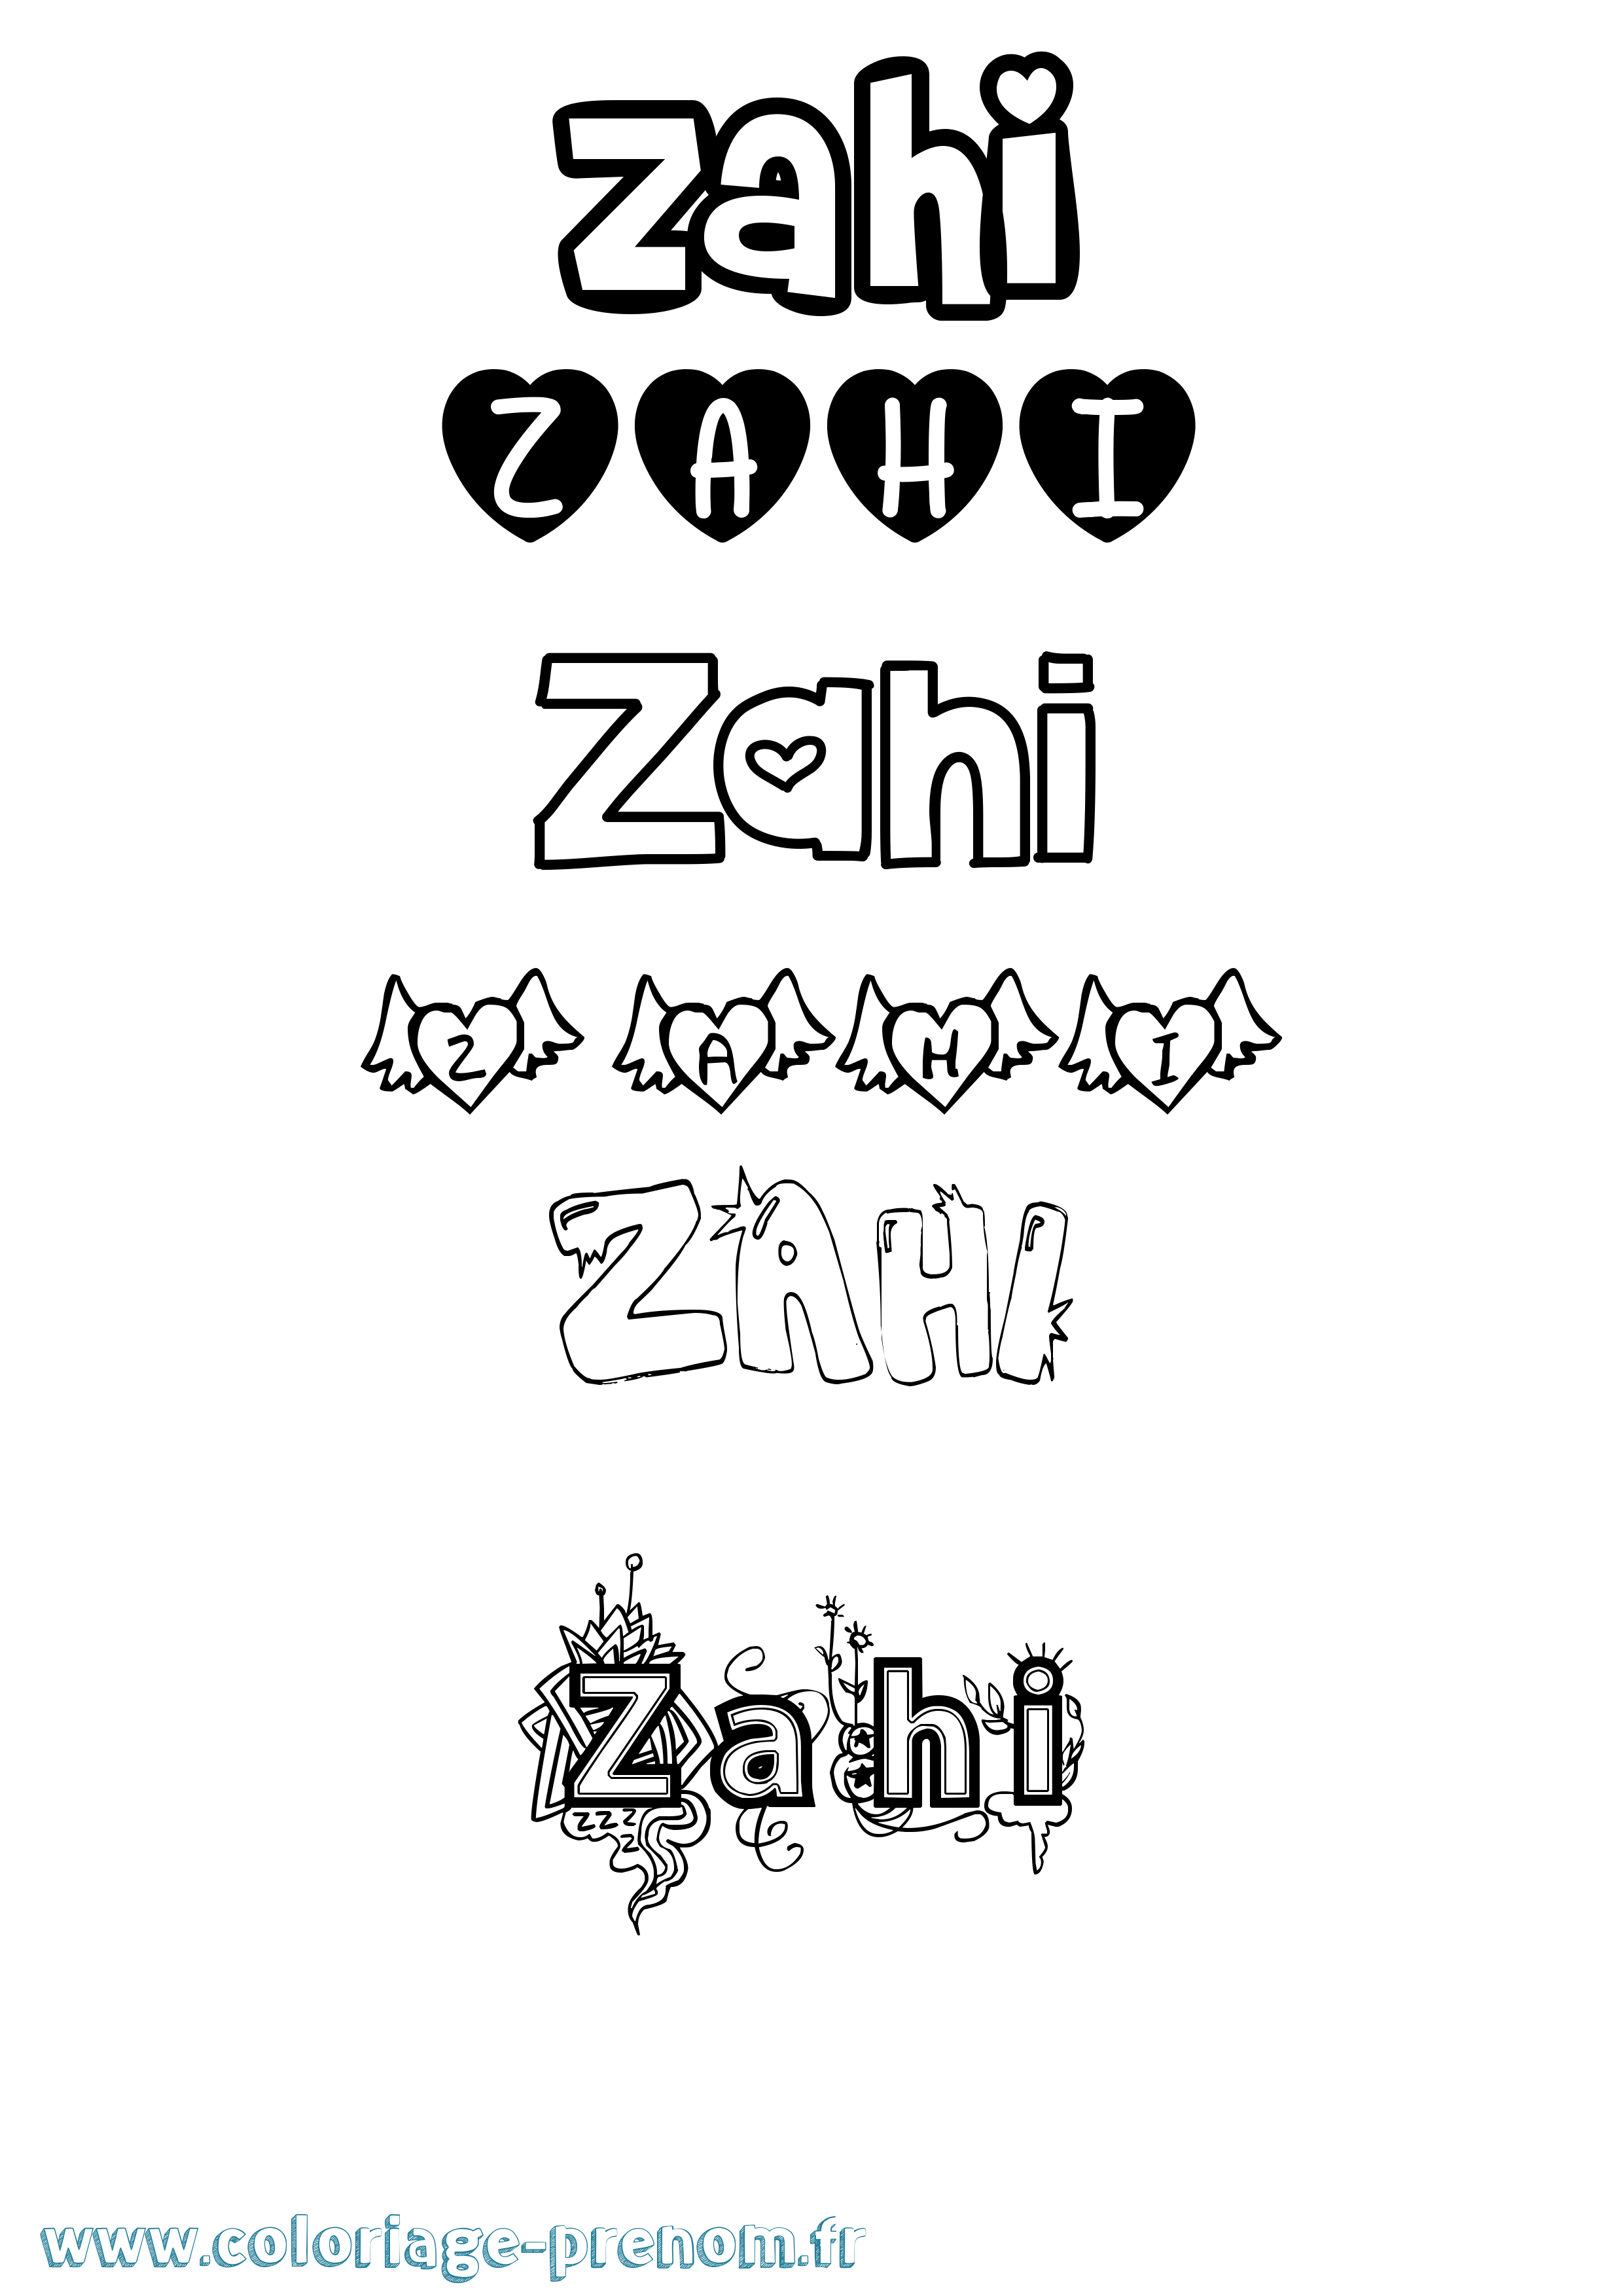 Coloriage prénom Zahi Girly